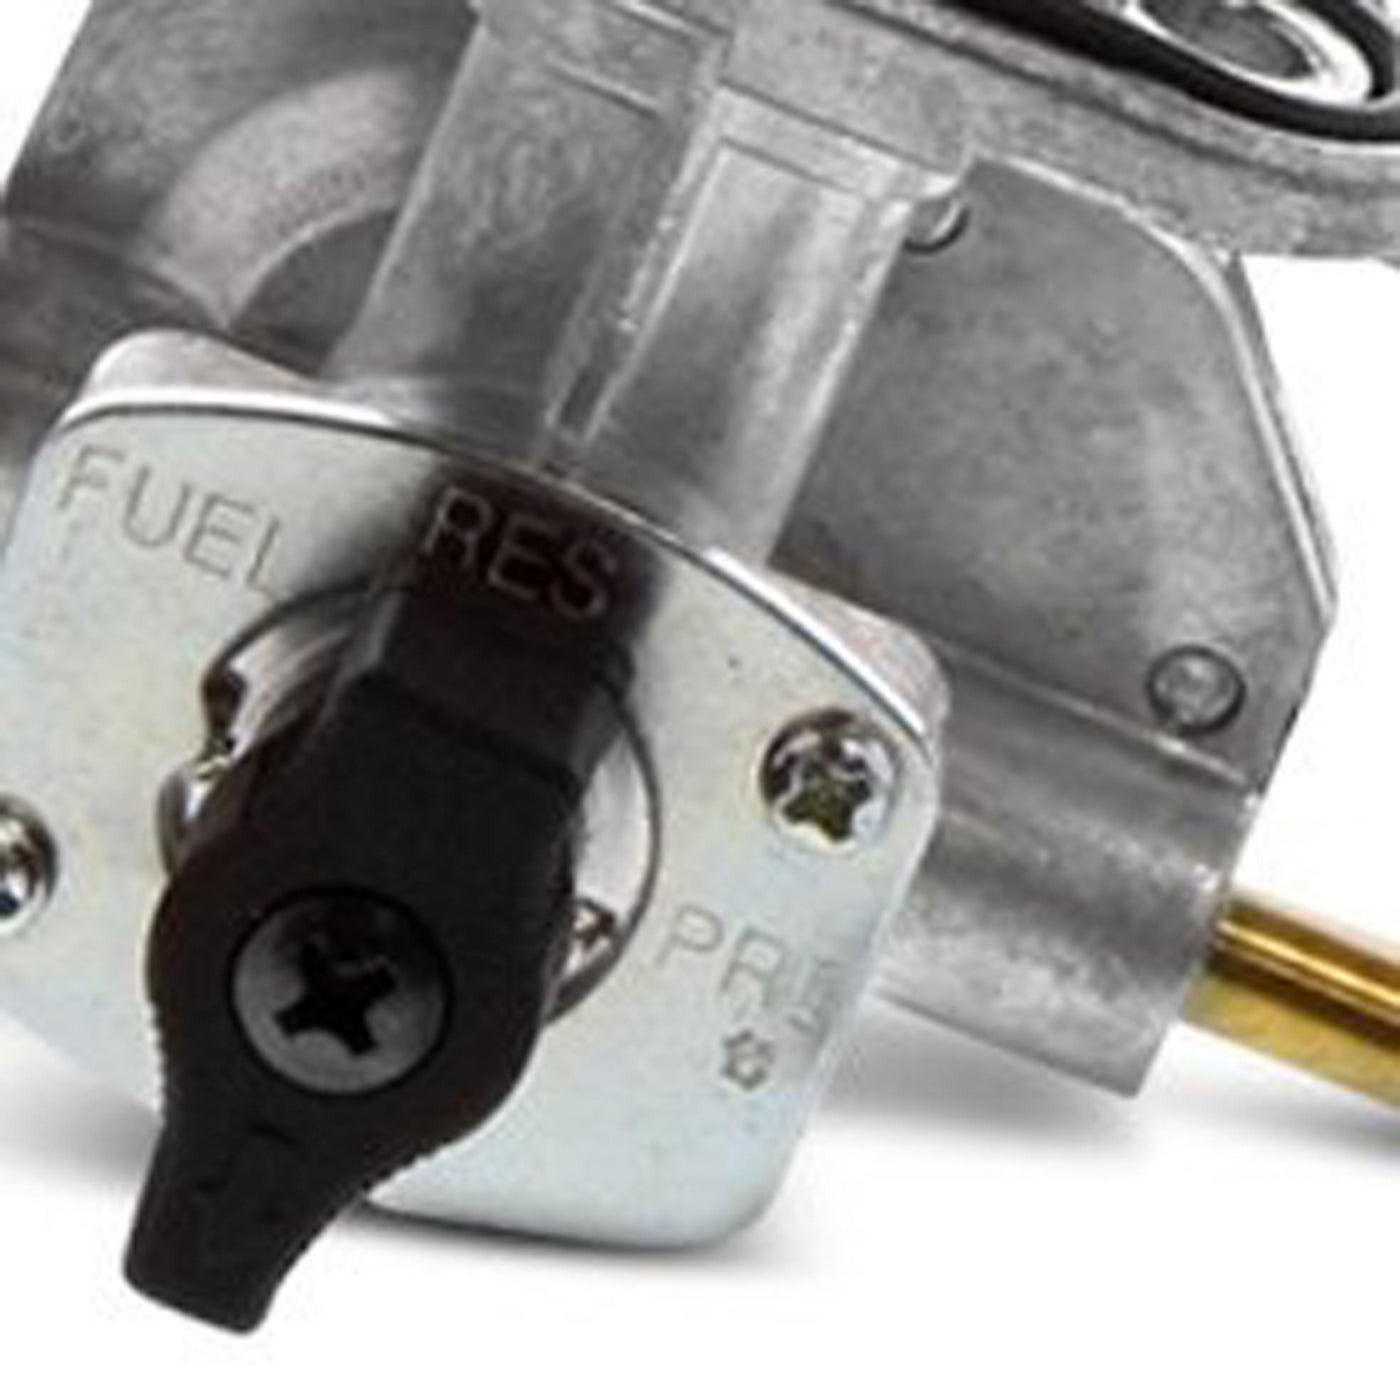 Fuel Star FS101-0126 Fuel Valve Kit #FS101-0126